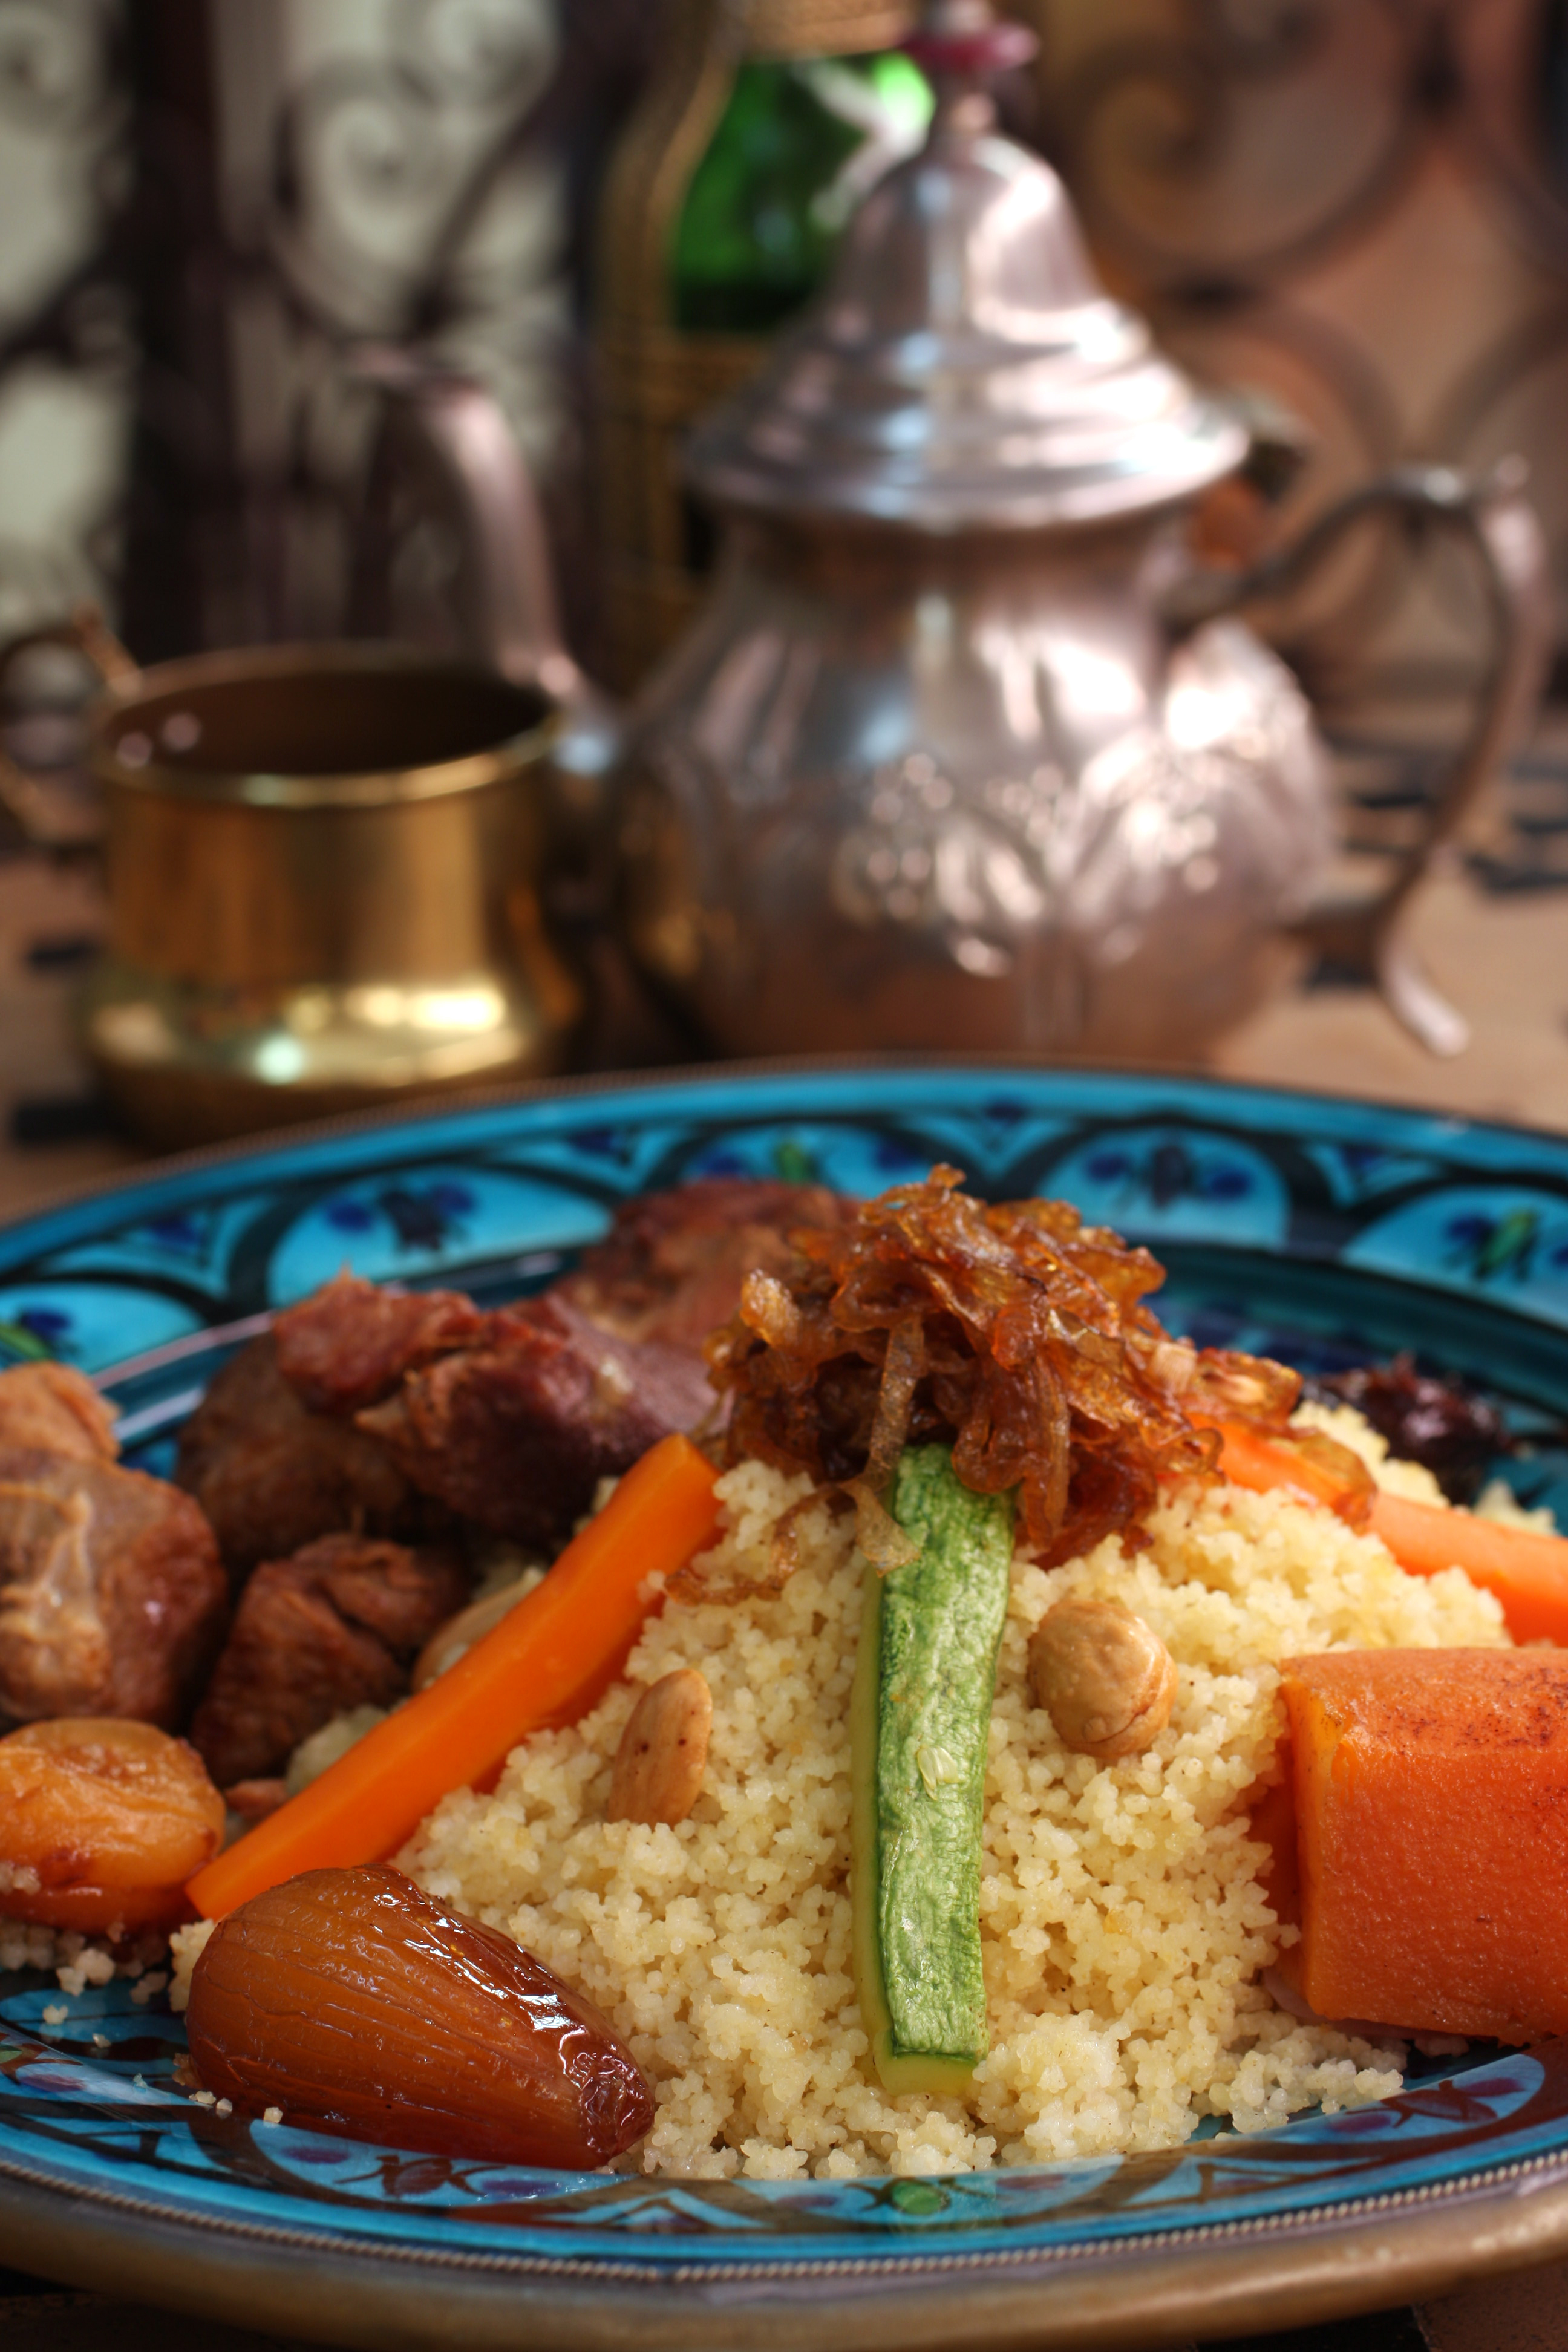 Servida à parte no Tanger, a harissa apimenta pratos como o Couscous Royal, com couscous marroquino, cordeiro, legumes, frutas secas, amêndoas, grão de bico e cebola caramelizada